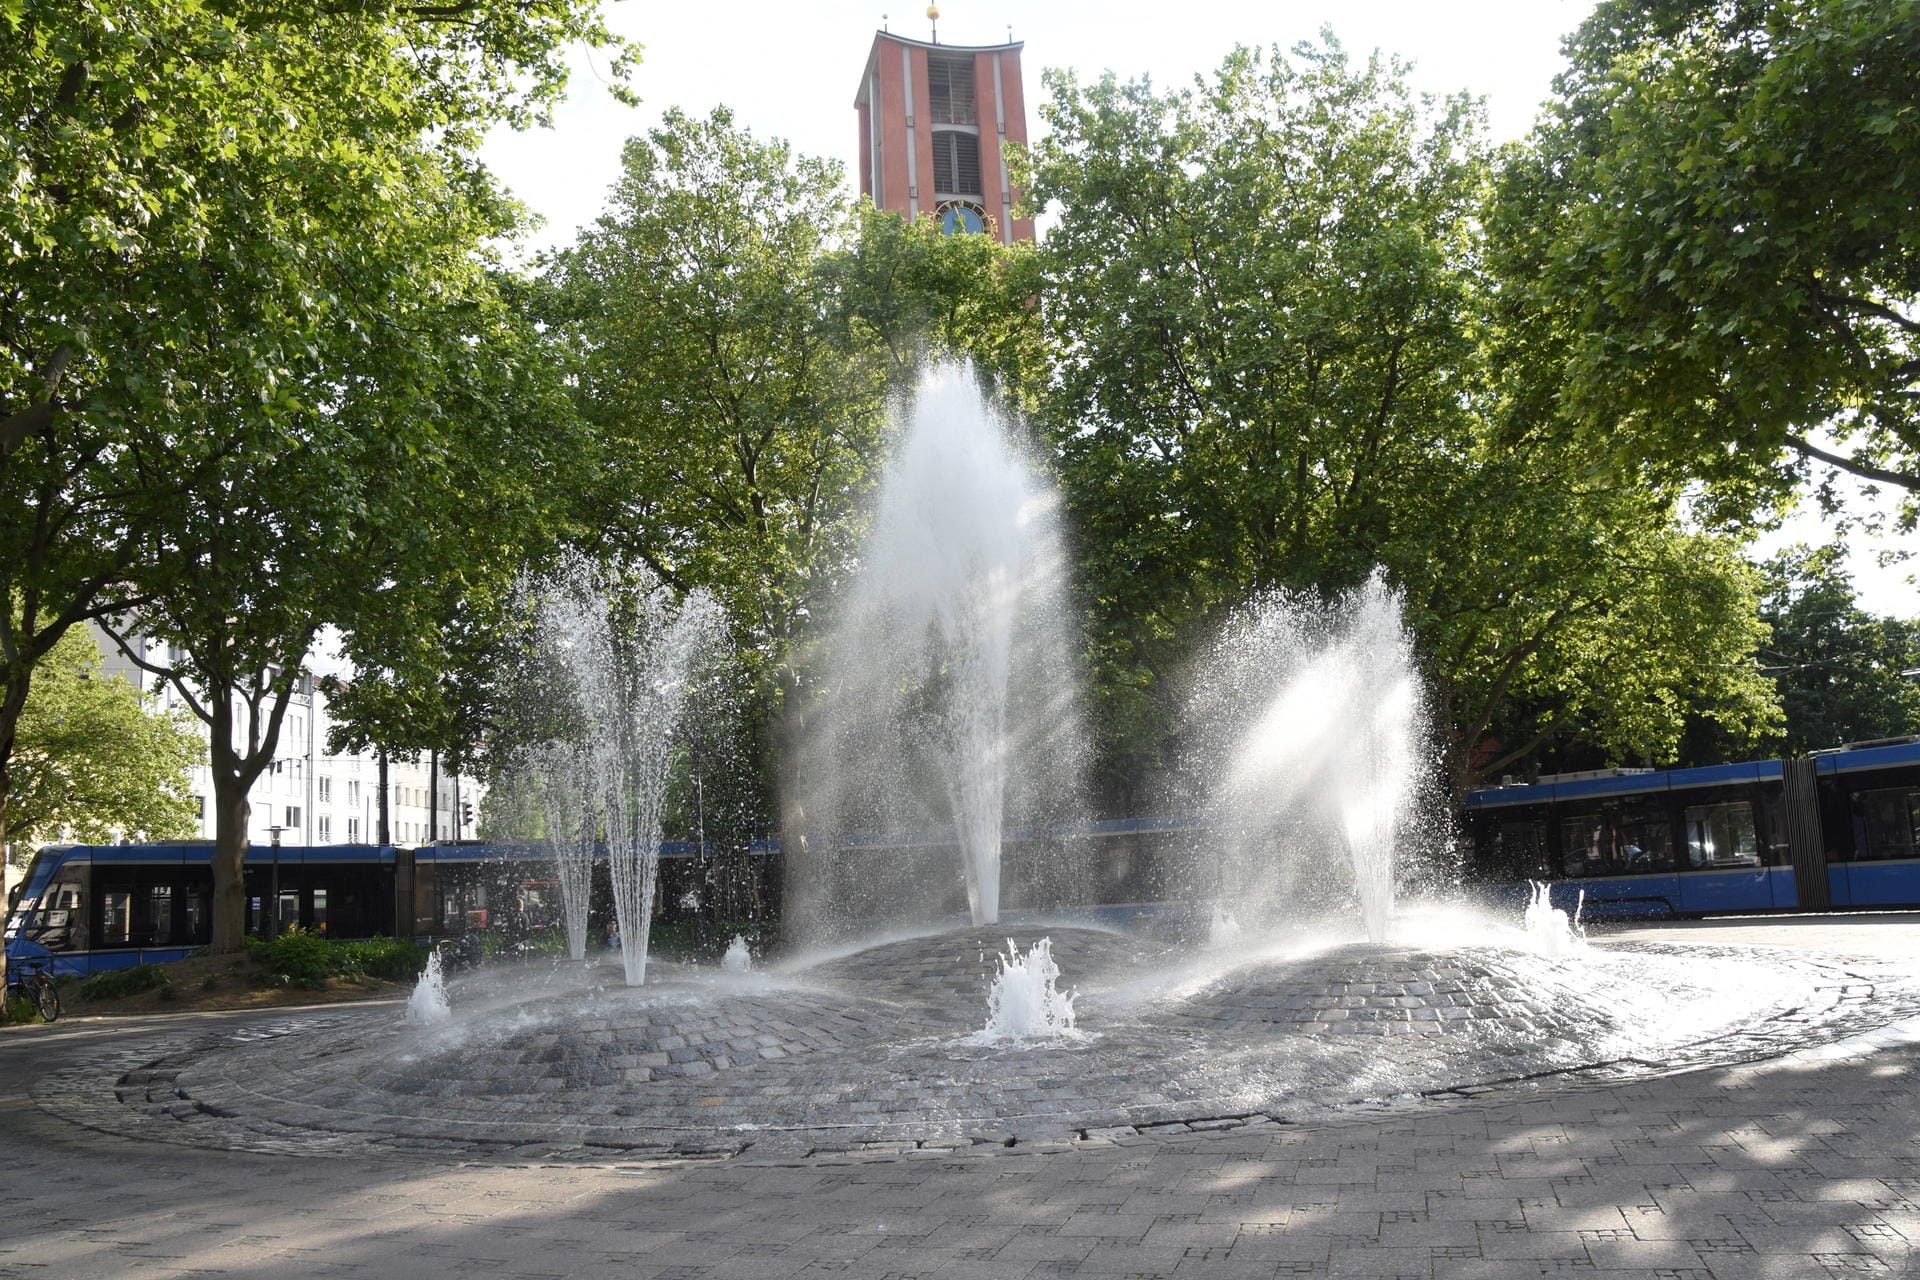 Sprudelnder Brunnen am Torplatz in München: Bei sommerlichen Temperaturen toben hier viele Kinder und kühlen sich ab.